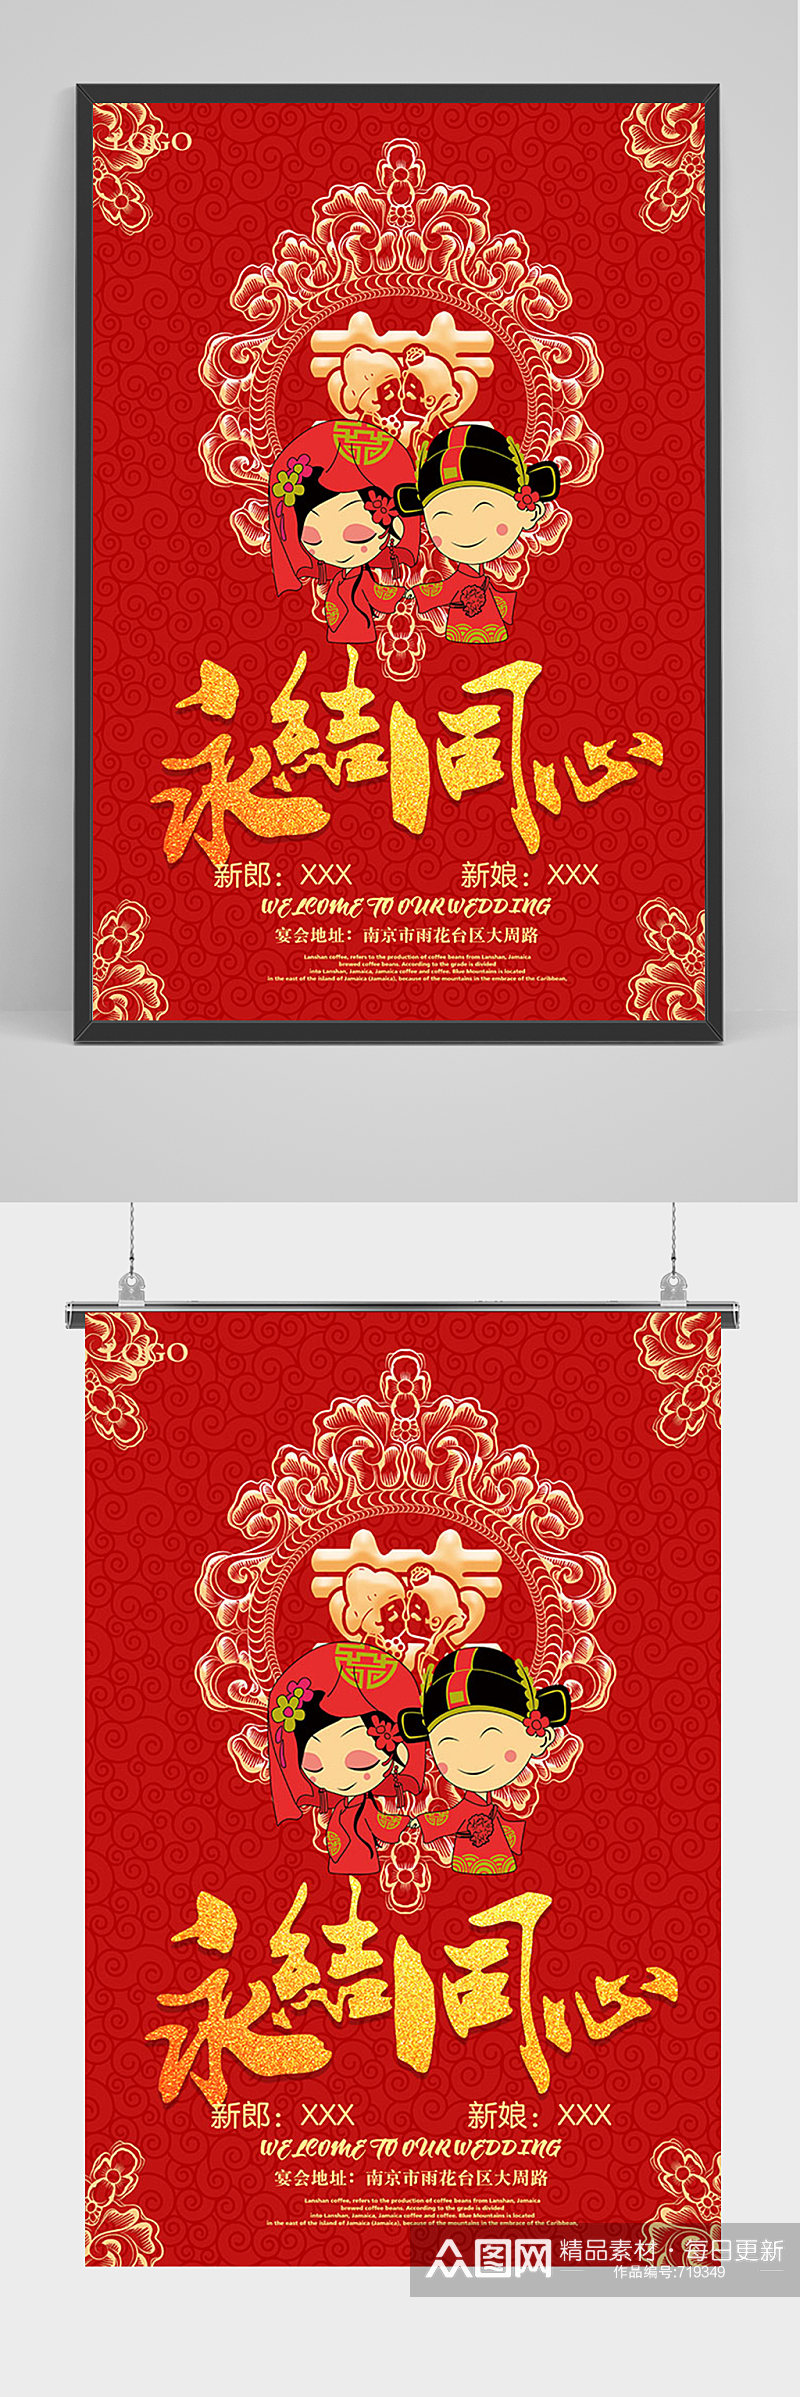 红色中式永结同心婚礼海报素材